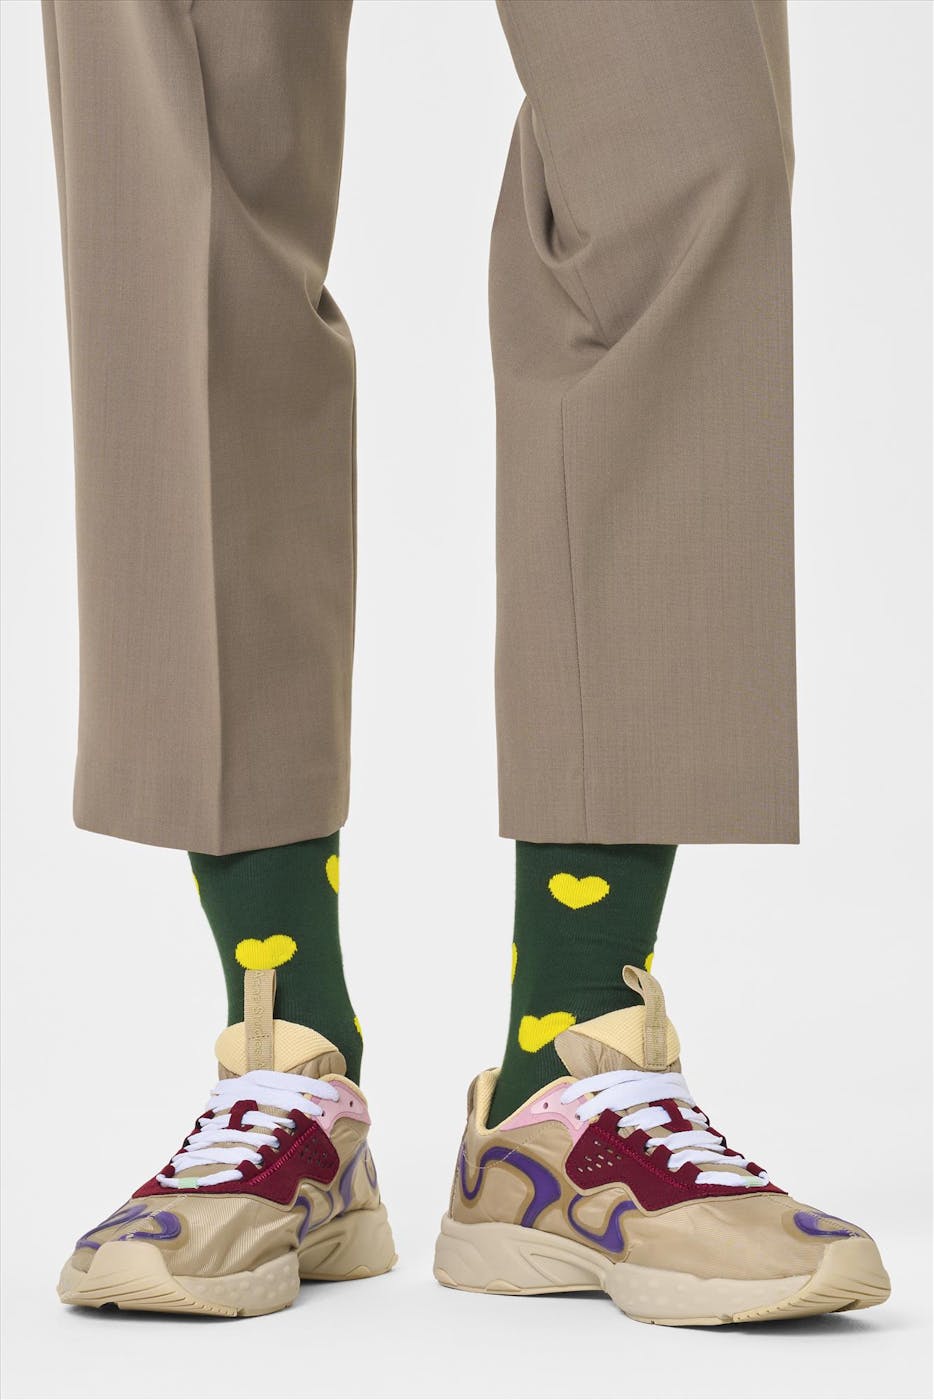 Happy Socks - Groene Hearts sokken, maat: 41-46